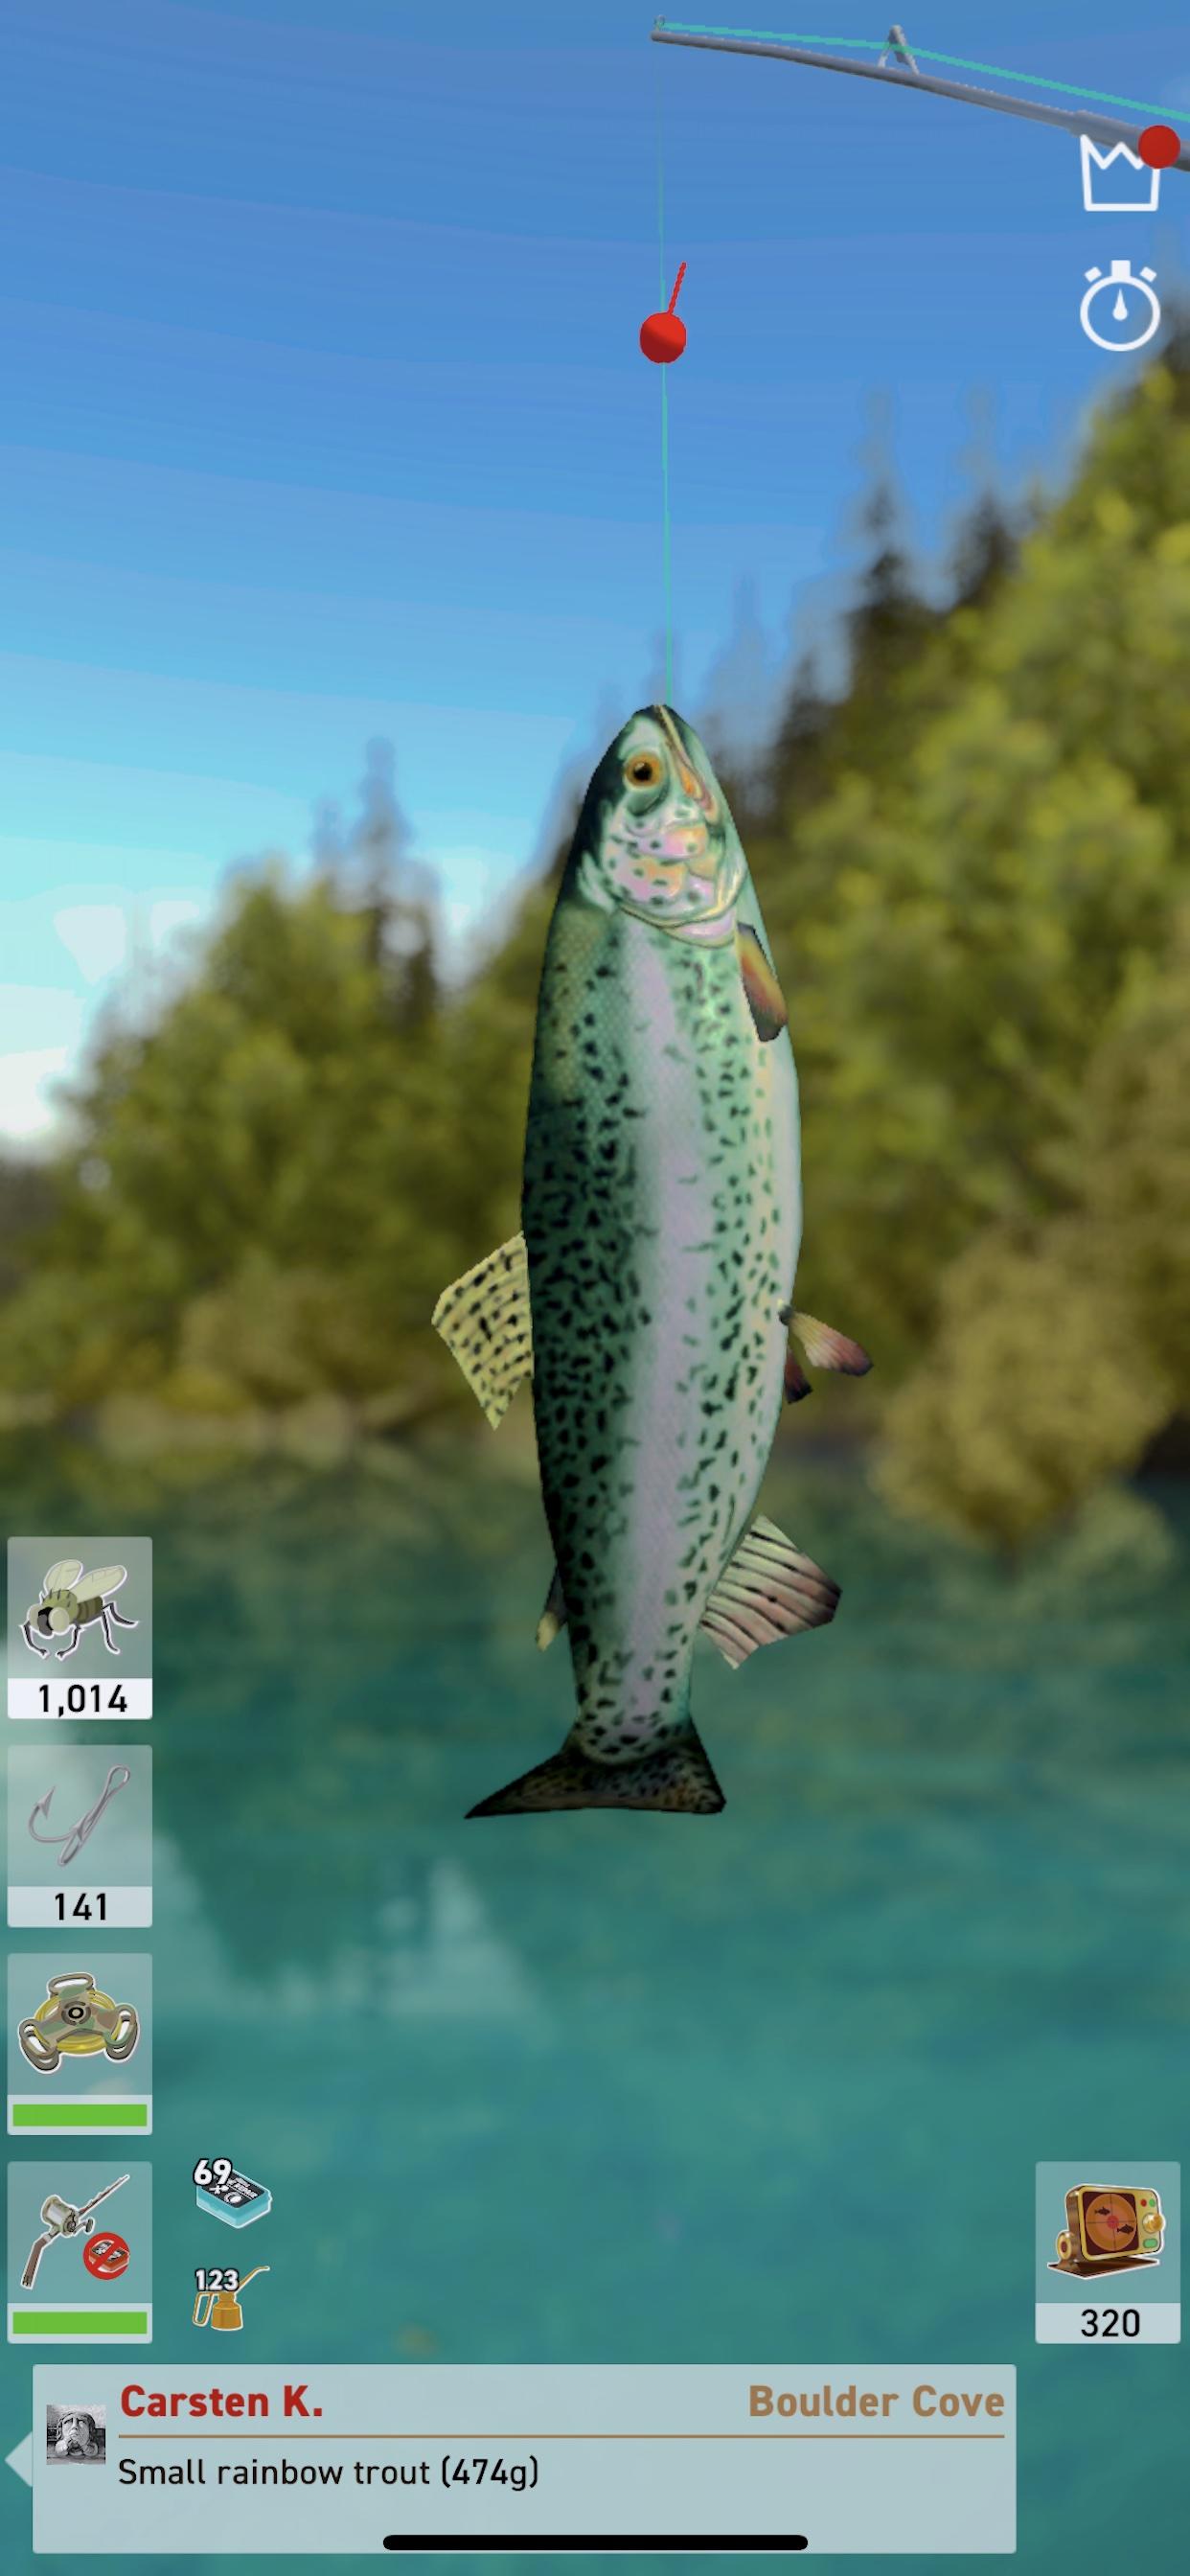 The Fishing Club 3D遊戲截圖